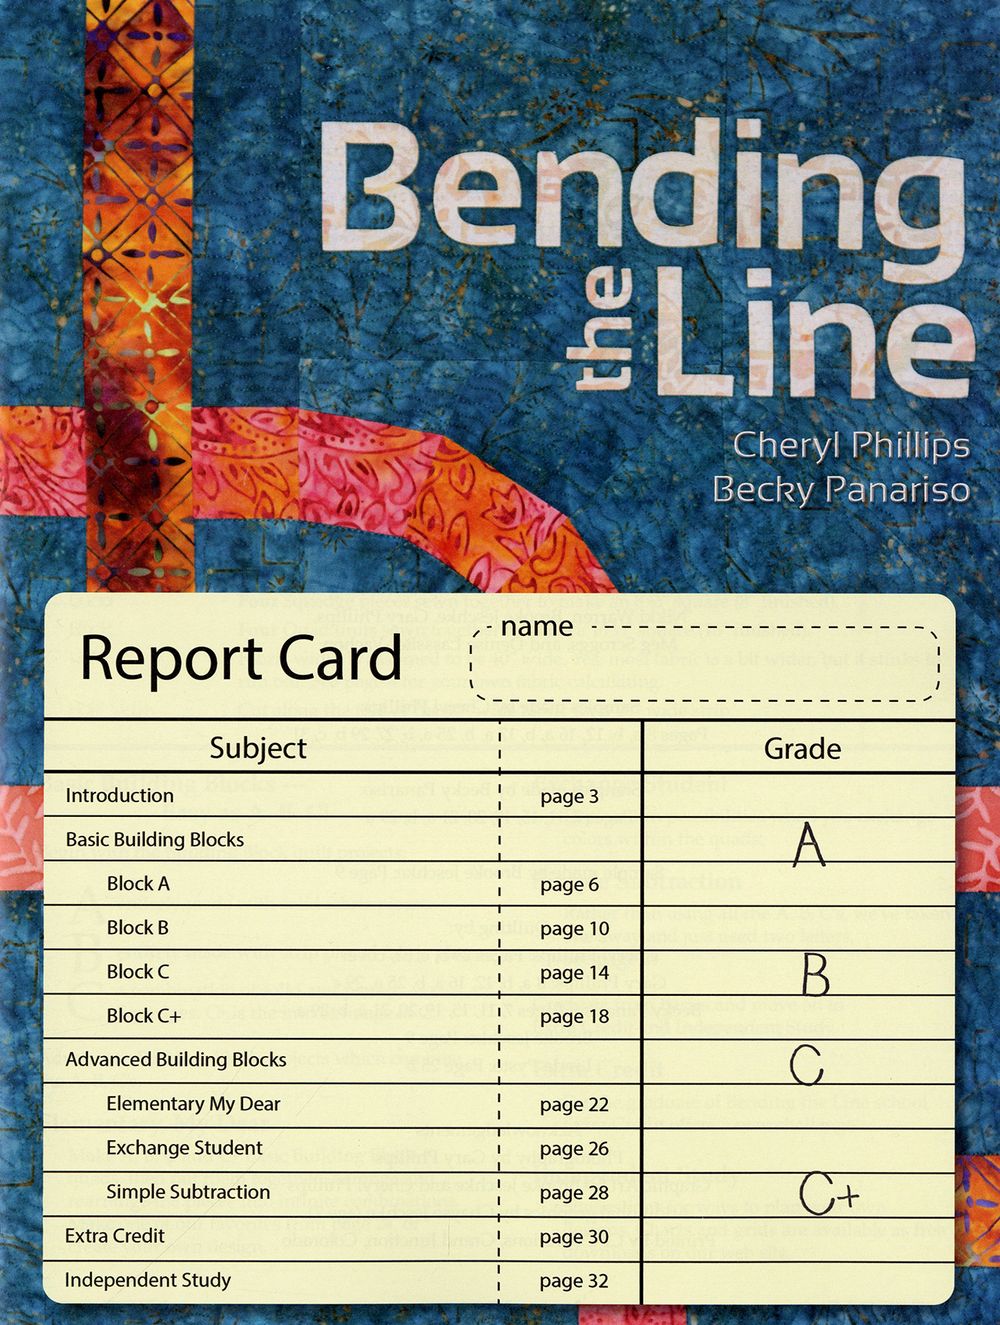 Bending The Line Quilt Book by Cheryl Phillips of Phillips Fiber Art